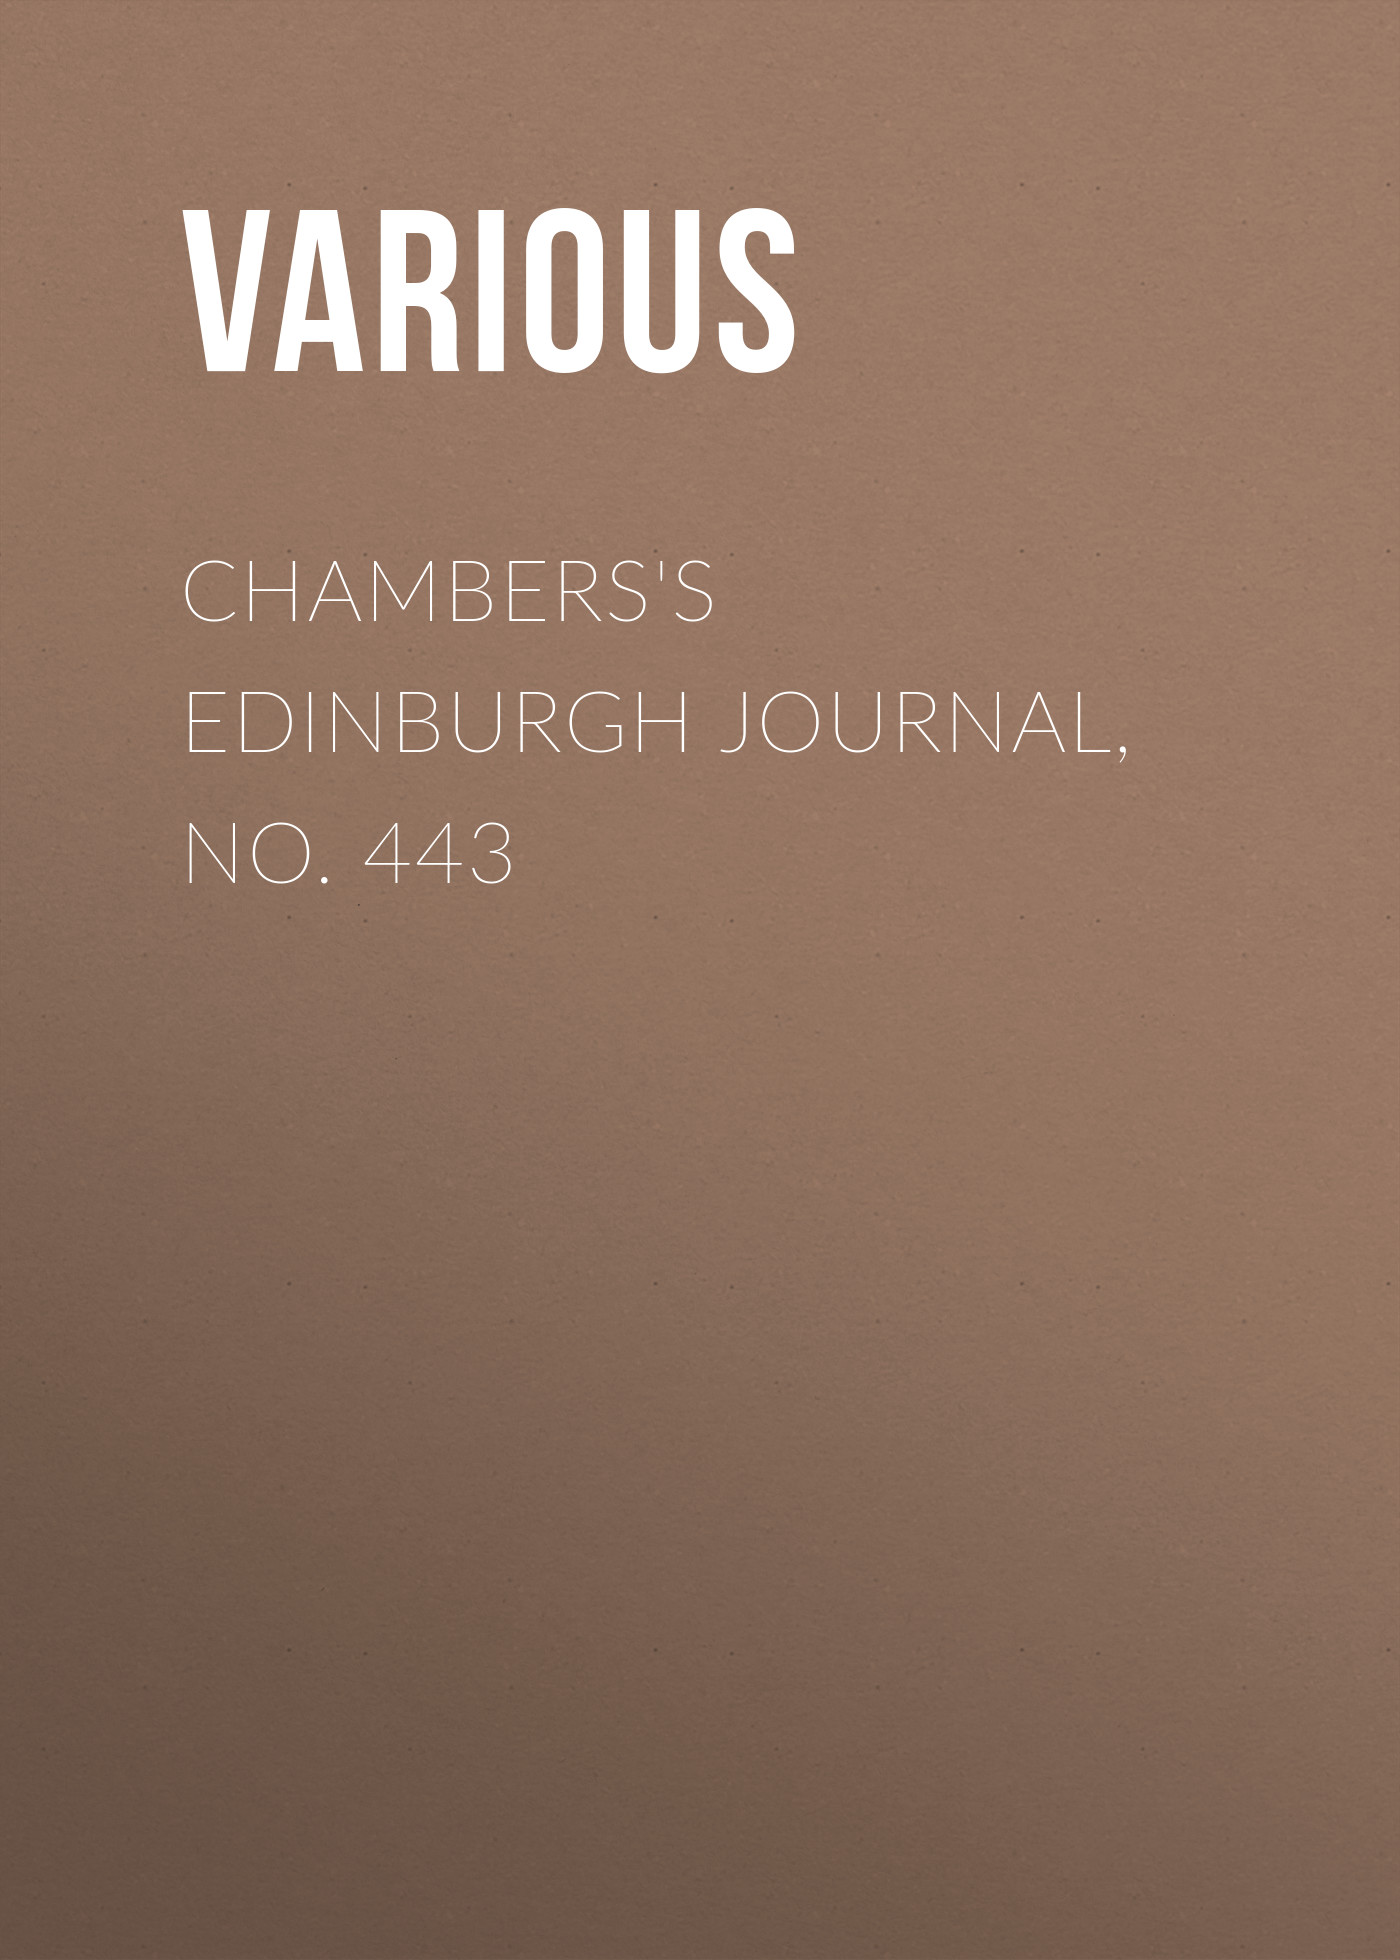 Книга Chambers's Edinburgh Journal, No. 443 из серии , созданная  Various, может относится к жанру Зарубежная старинная литература, Журналы, Зарубежная образовательная литература. Стоимость электронной книги Chambers's Edinburgh Journal, No. 443 с идентификатором 35492303 составляет 0 руб.